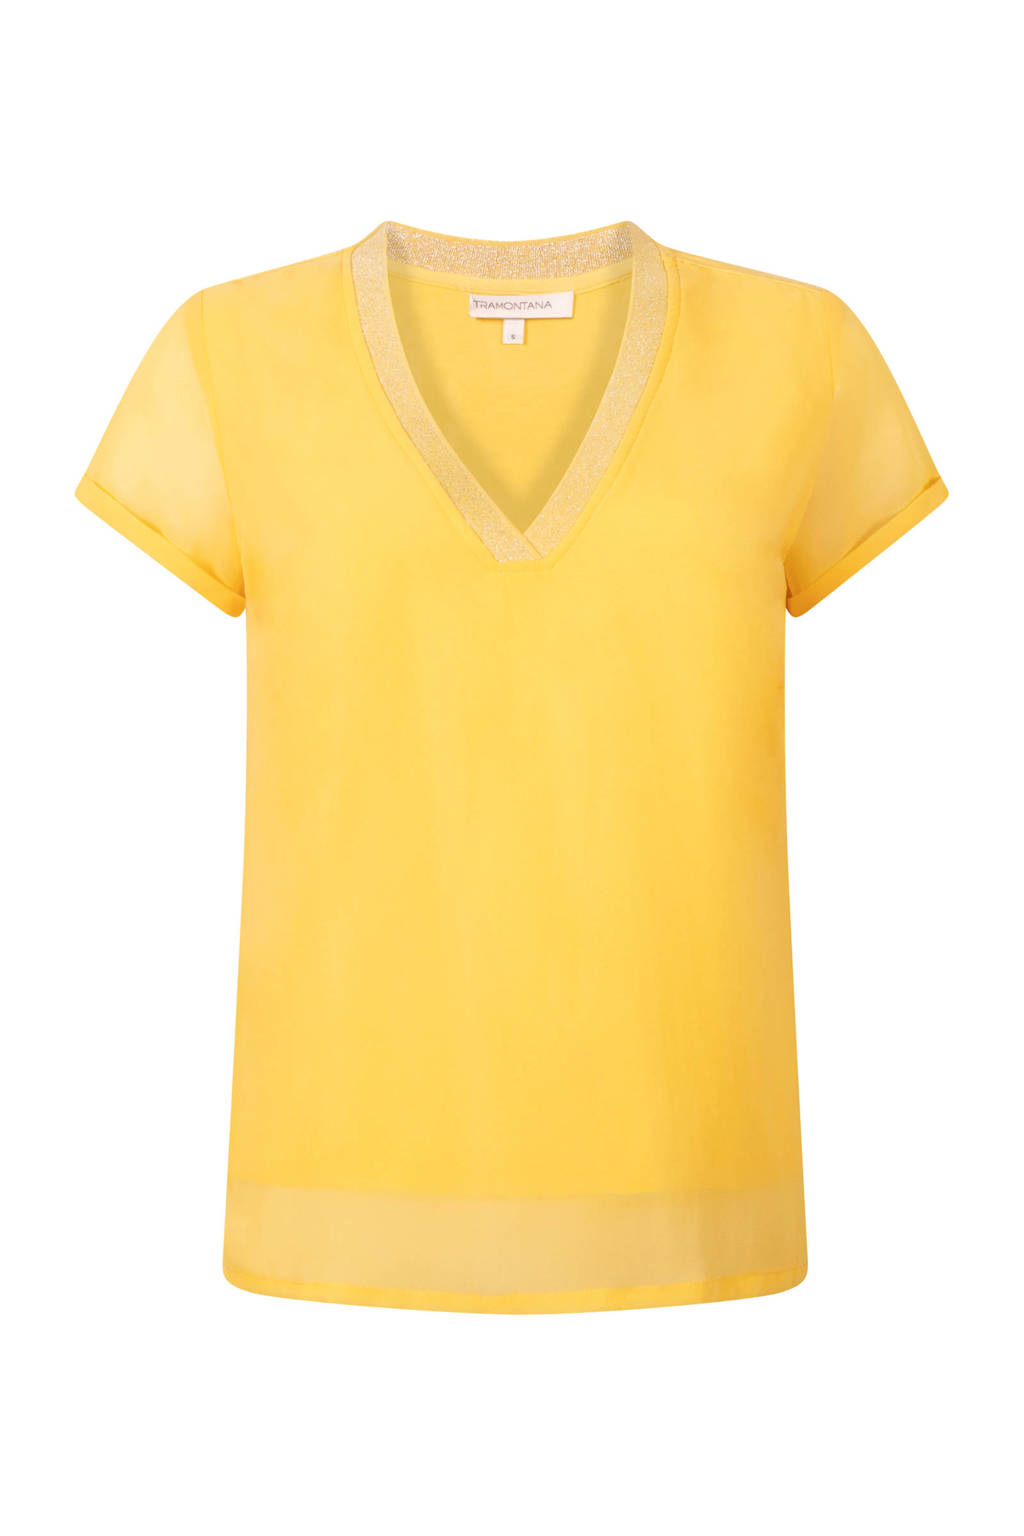 Gele dames Tramontana top van polyester met korte mouwen, V-hals en glitters